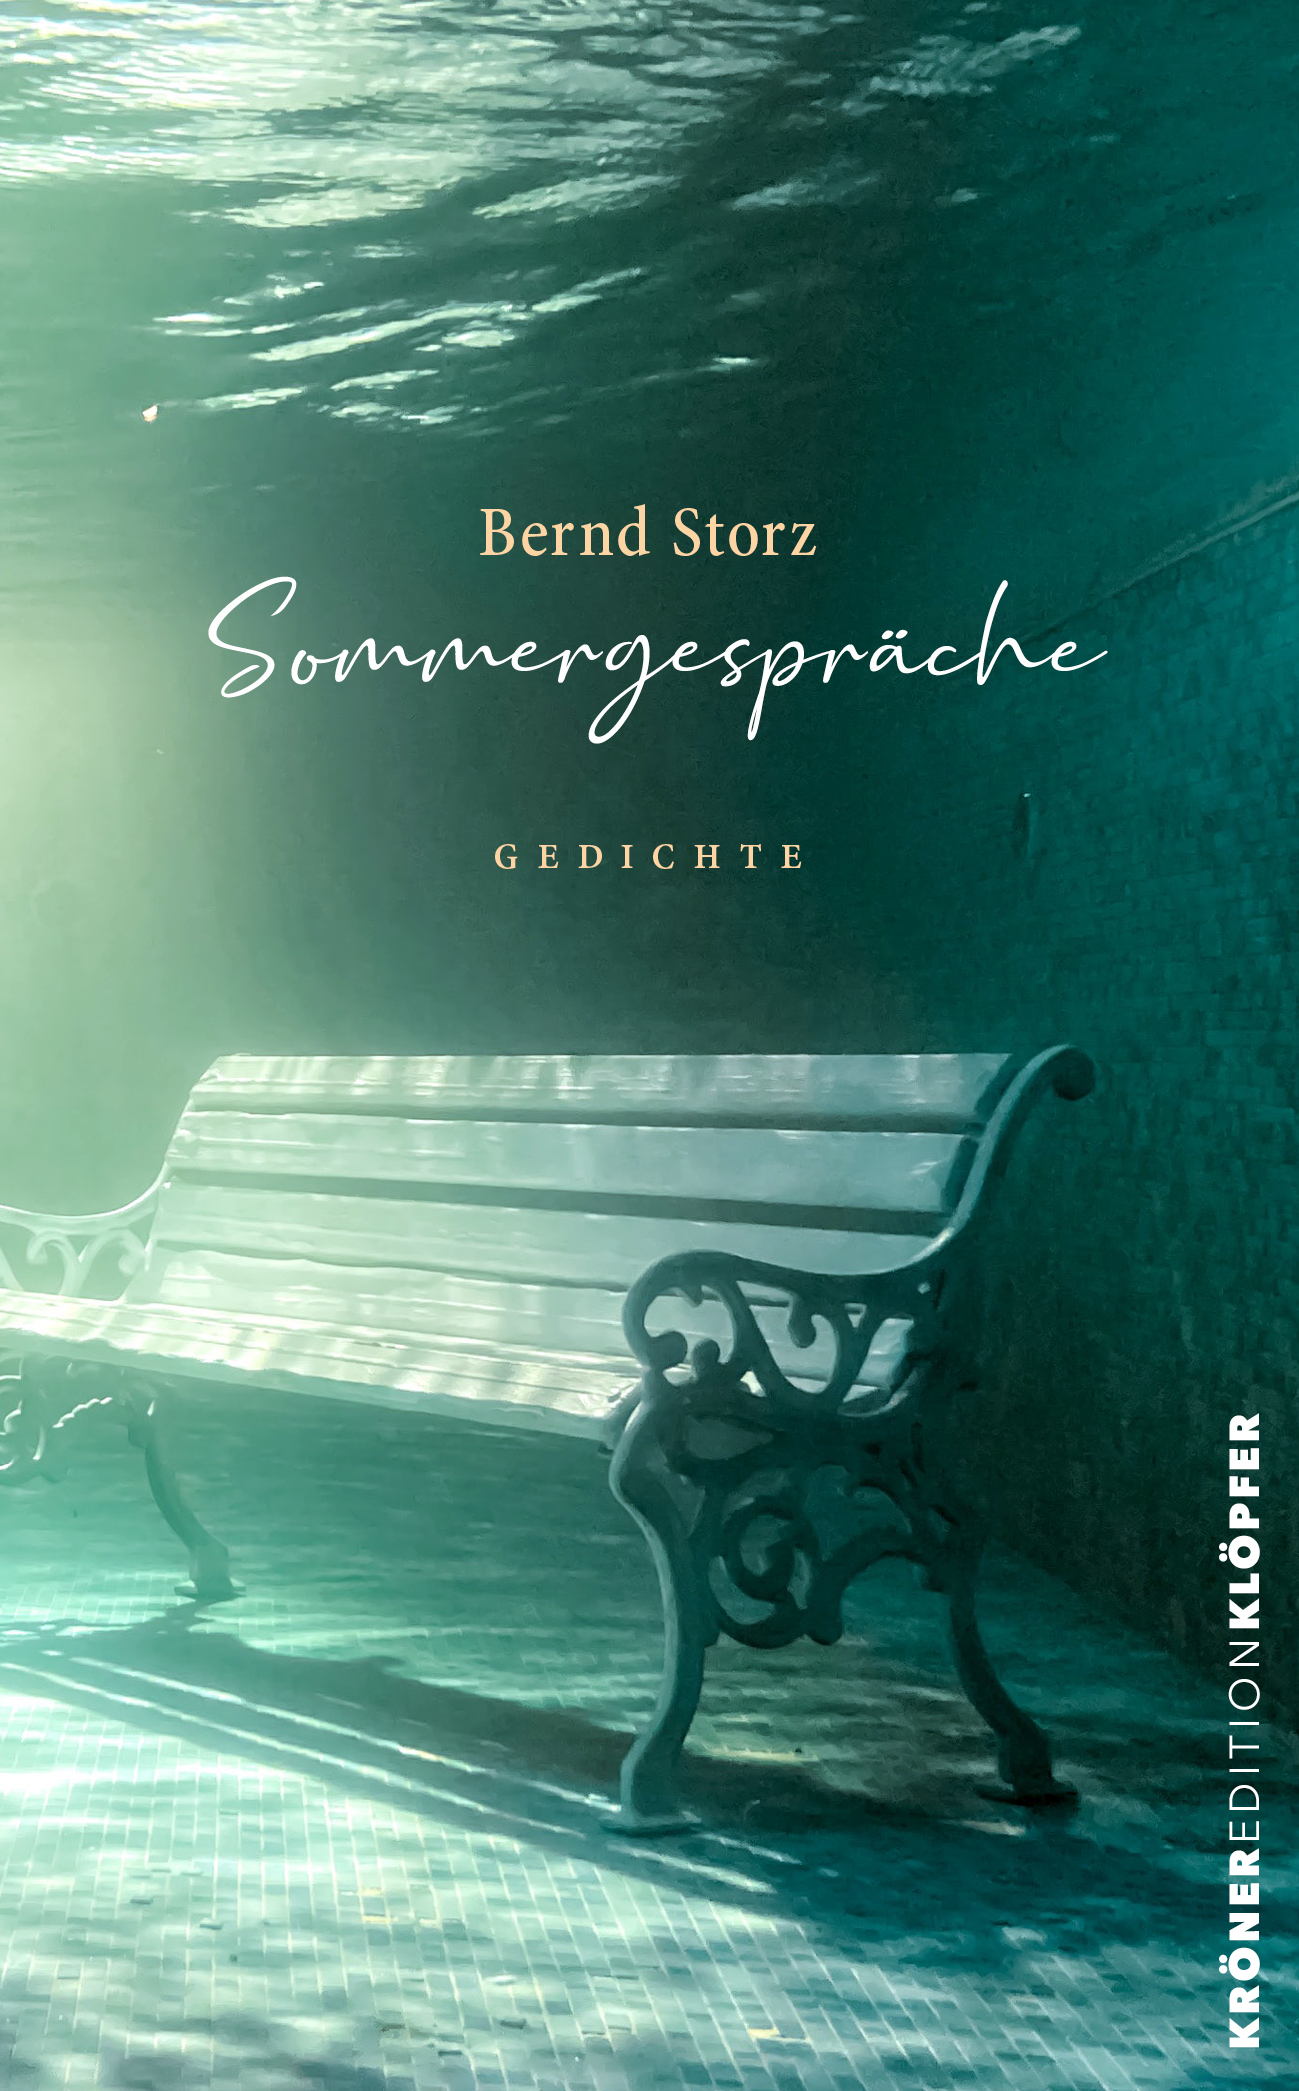 Bernd Storz Sommergespräche Gedichte